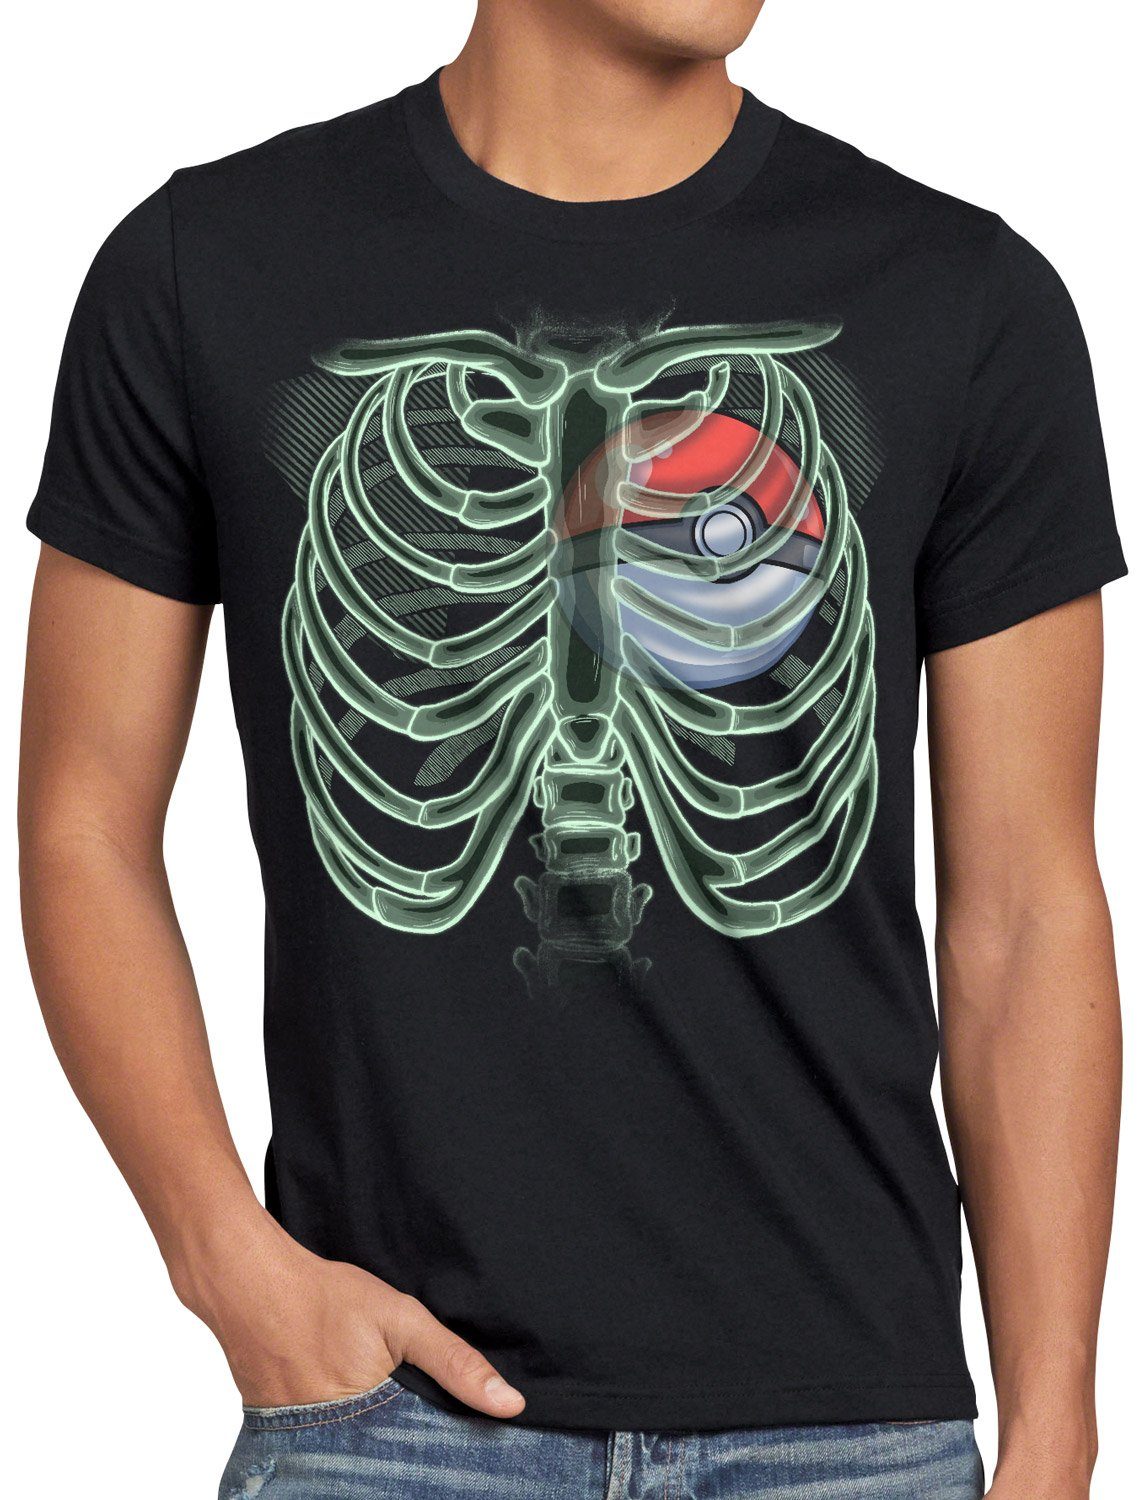 T-Shirt röntgen X-Ray Blaupause Herren style3 Print-Shirt monster Pokéball